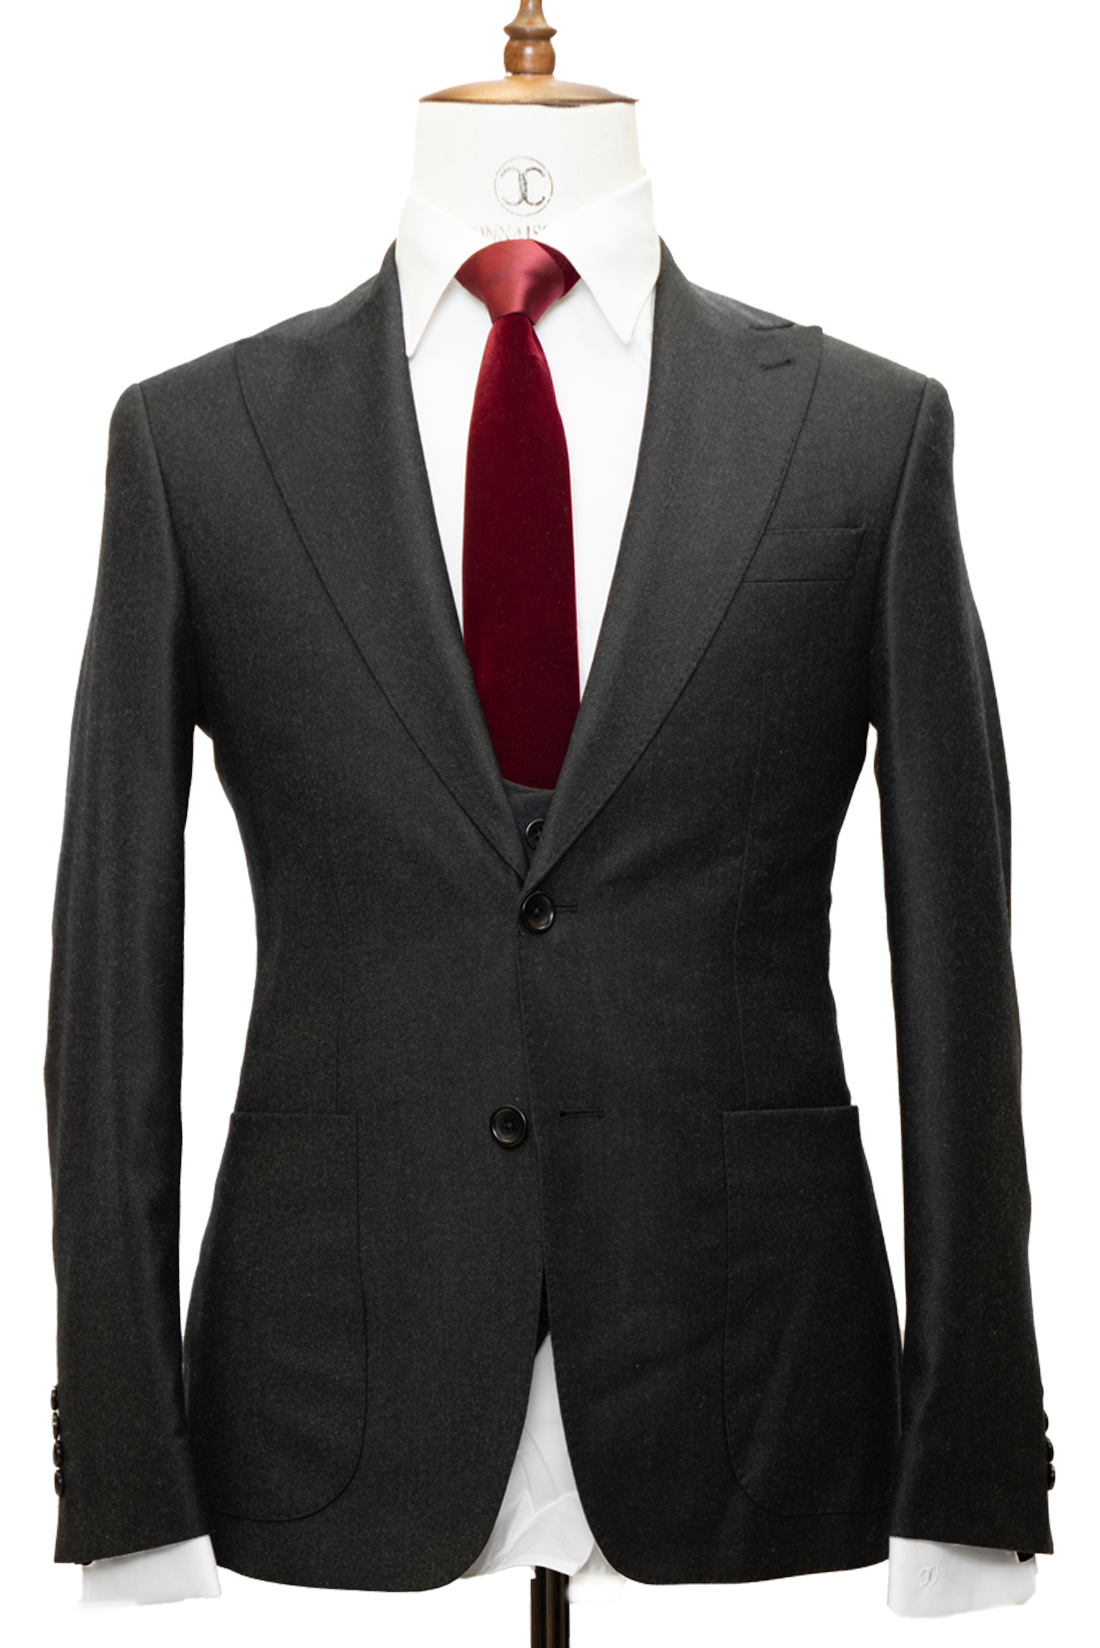 Zignone - Black Cashmere 3-Piece Fit Slim Fit Suit with Patch Pockets ...